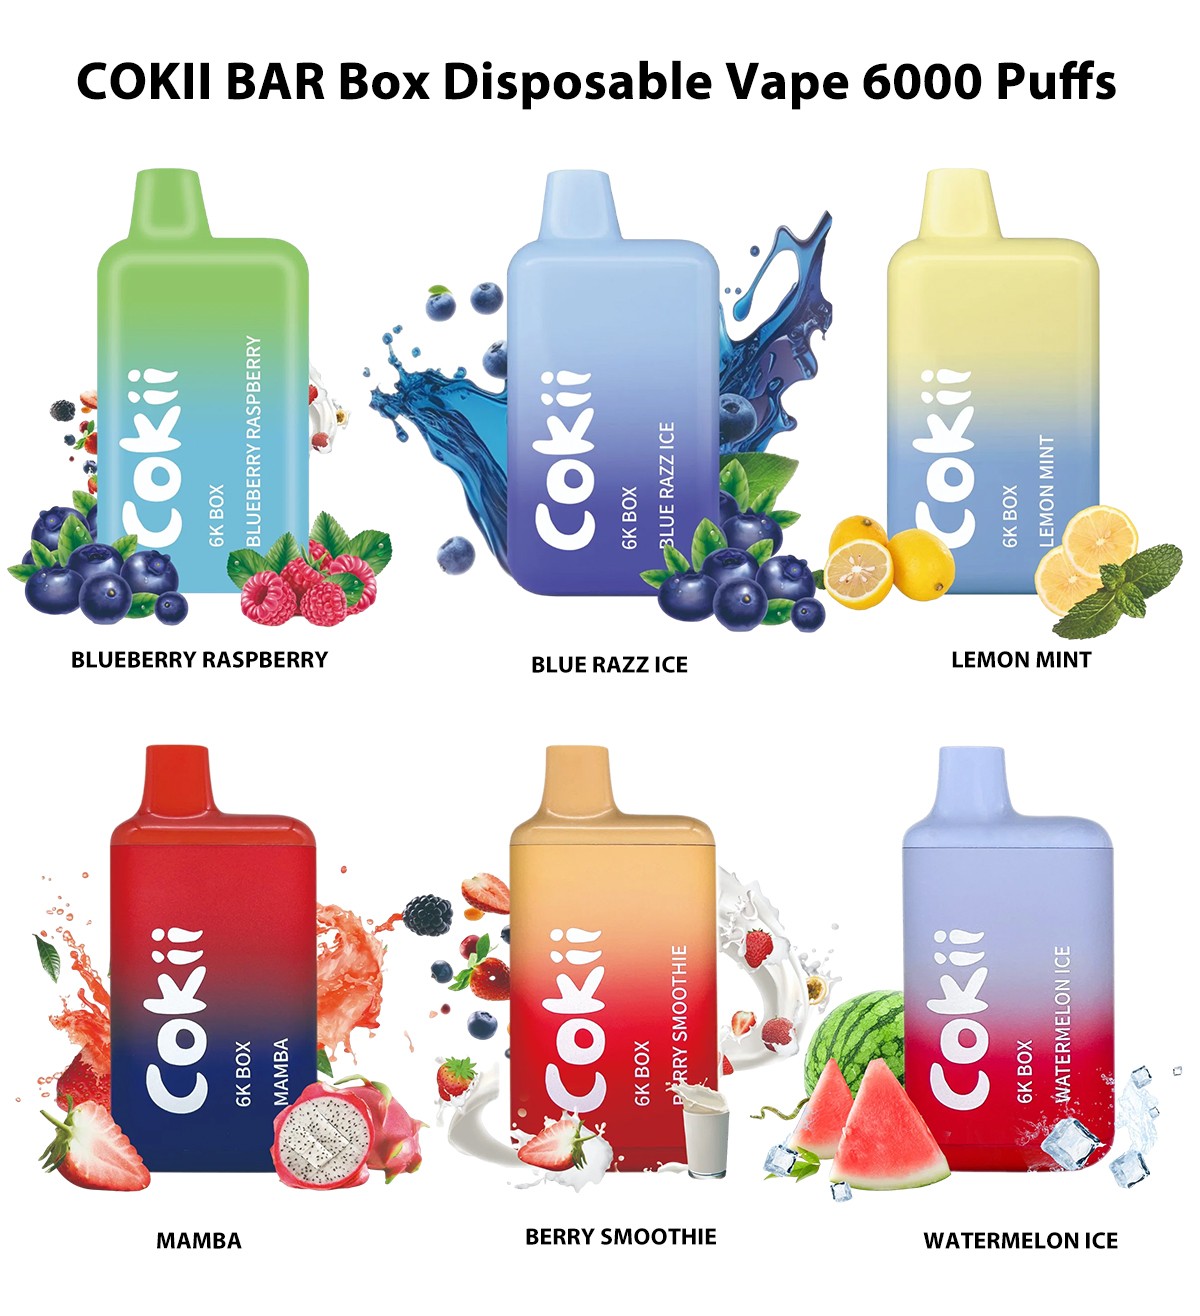 COKII BAR Box Disposable